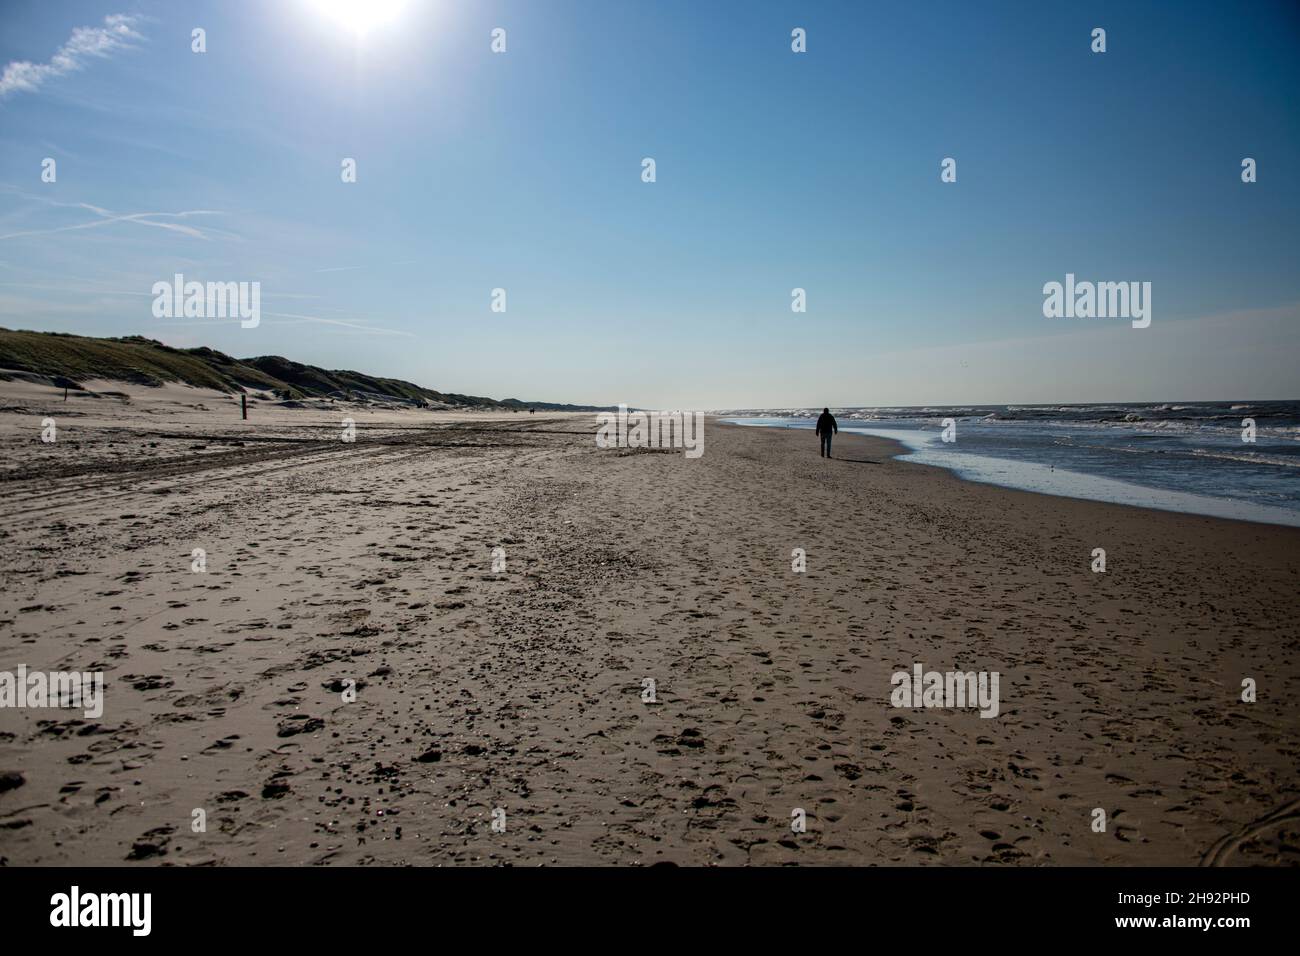 Uomo solo camminando sulla spiaggia tra le onde del mare e le dune di sabbia in una giornata di sole Foto Stock